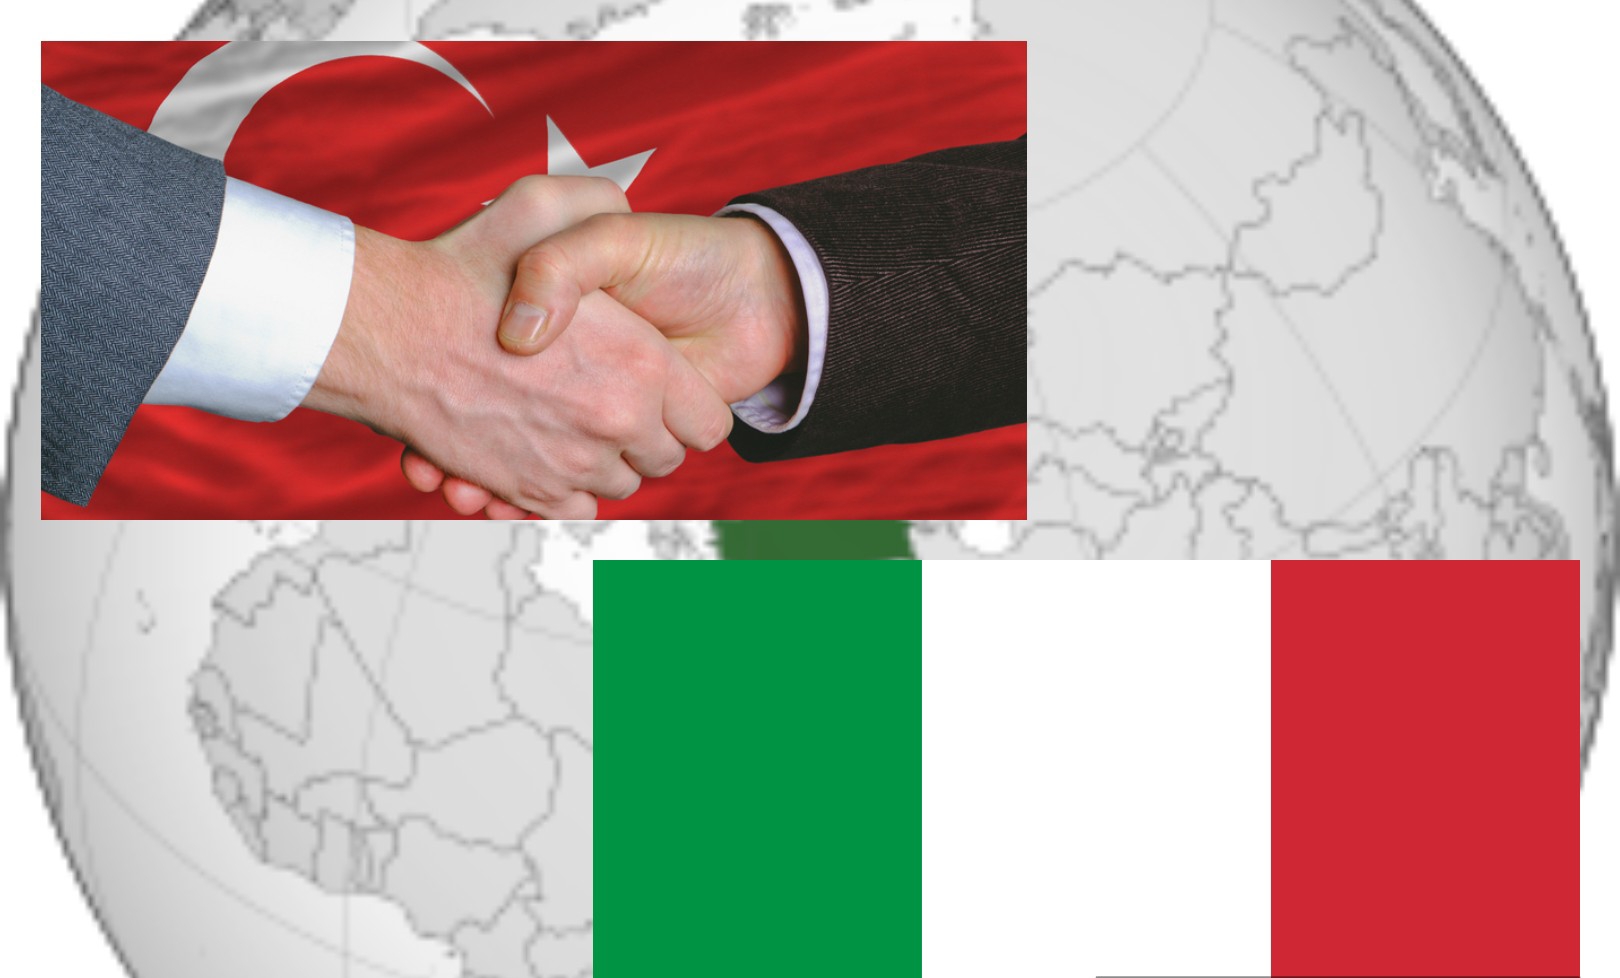 Interscambio commerciale nel 2020: Italia secondo partner europeo